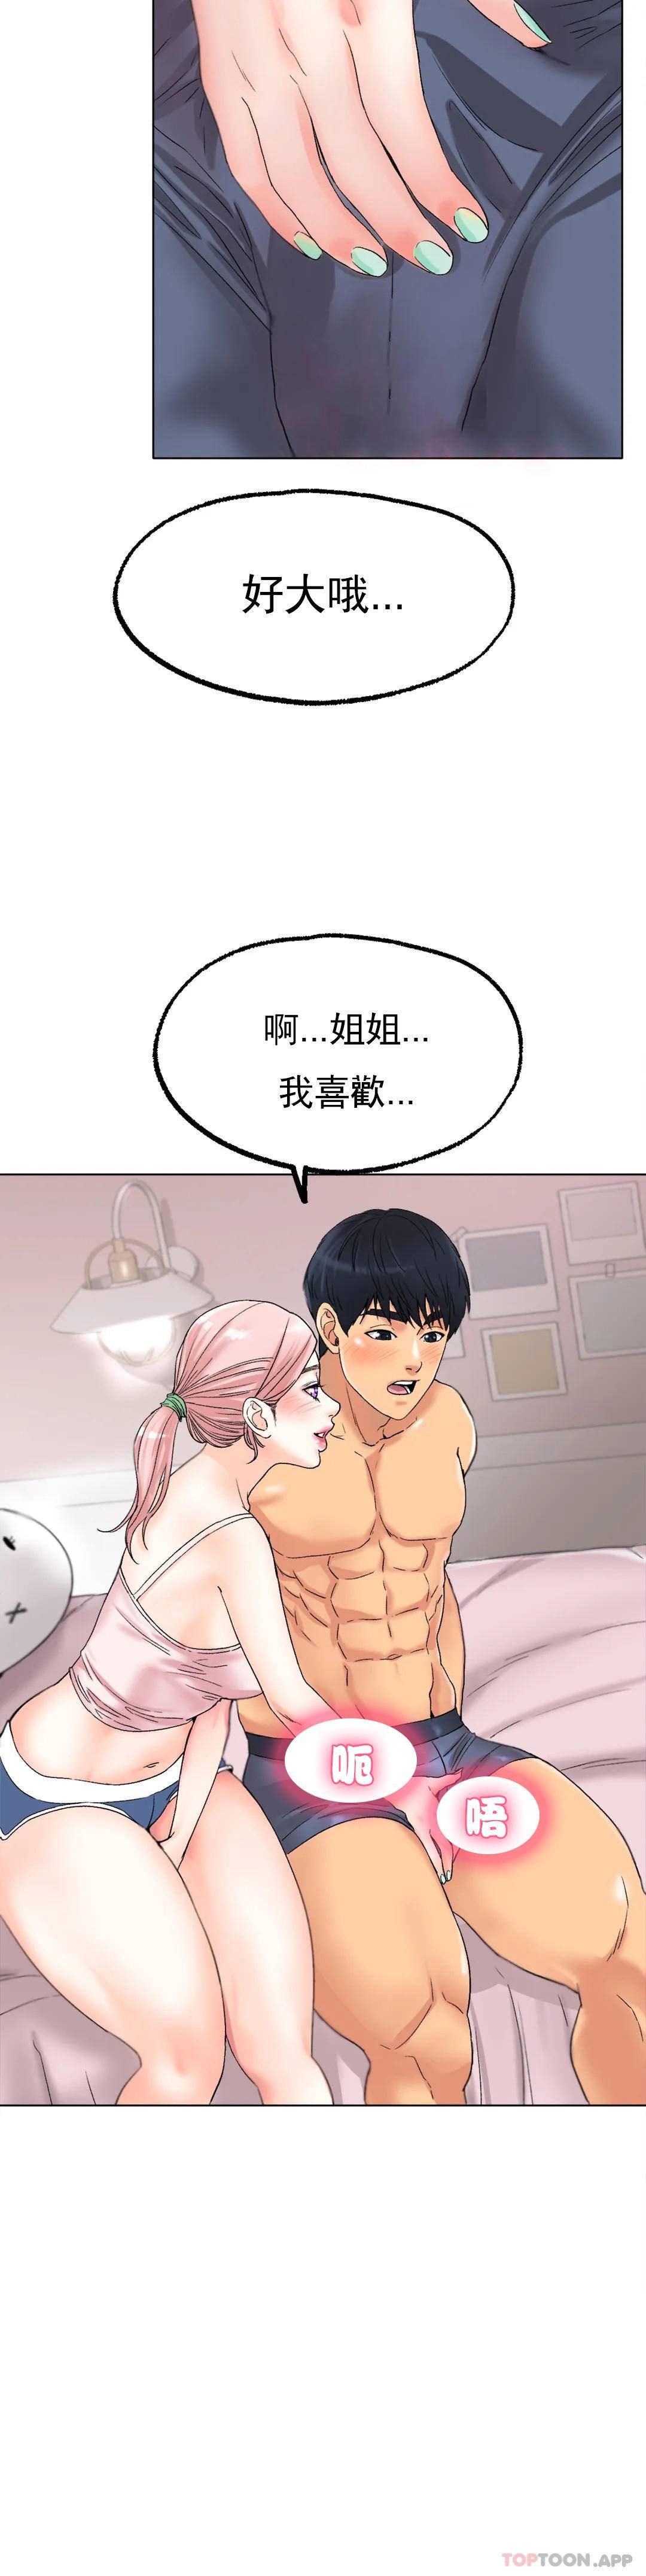 韩国污漫画 冰上的愛 第9话我还不算晚 10